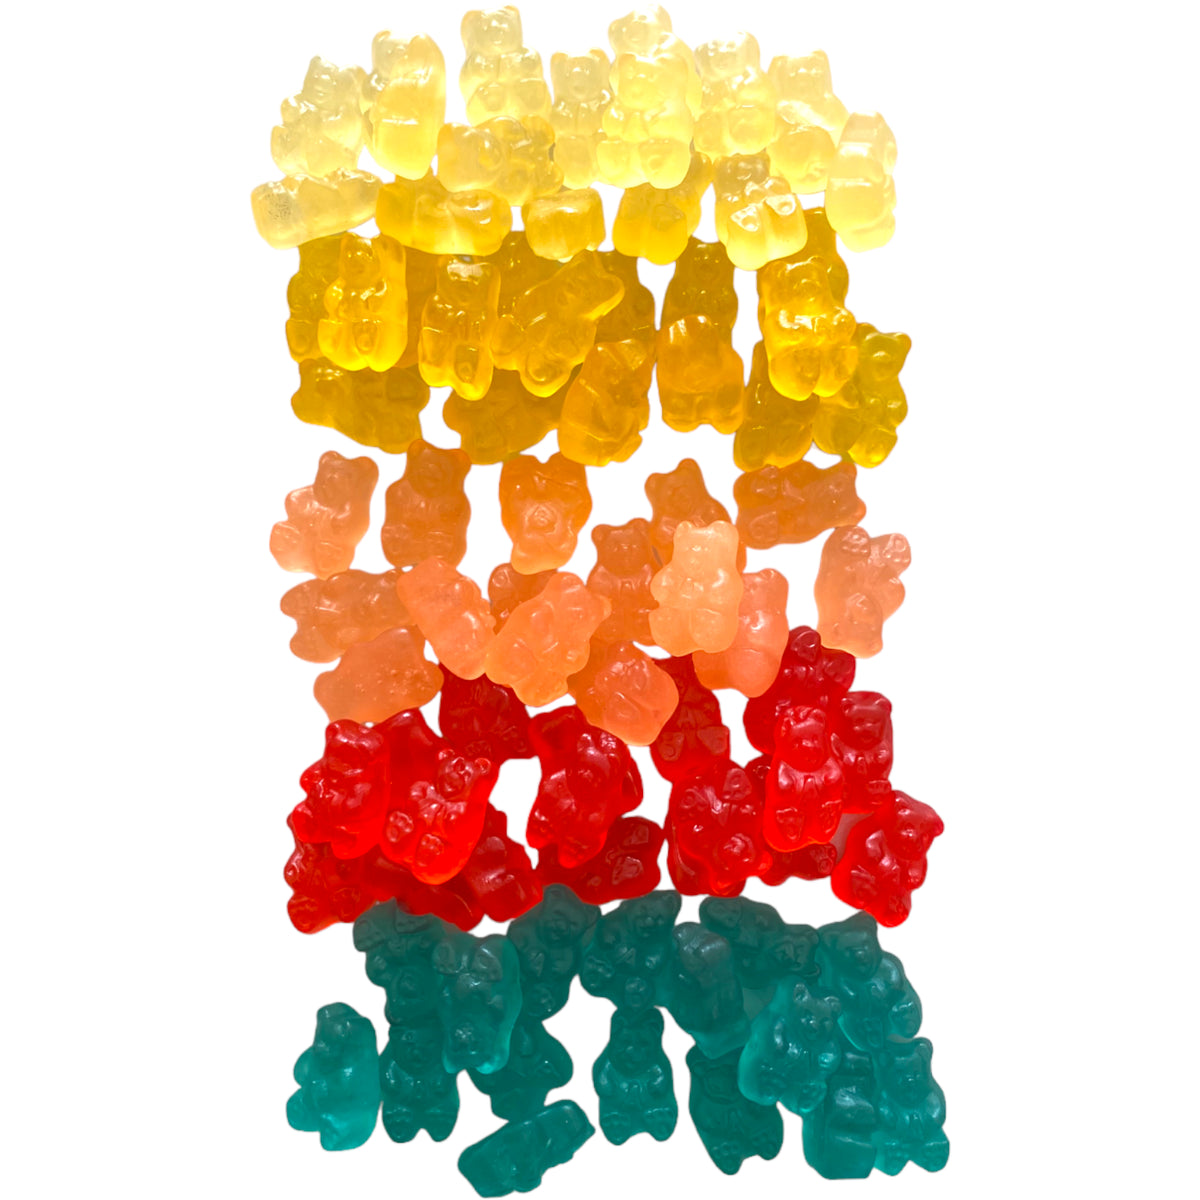 A Rainbow of Gummy Bears